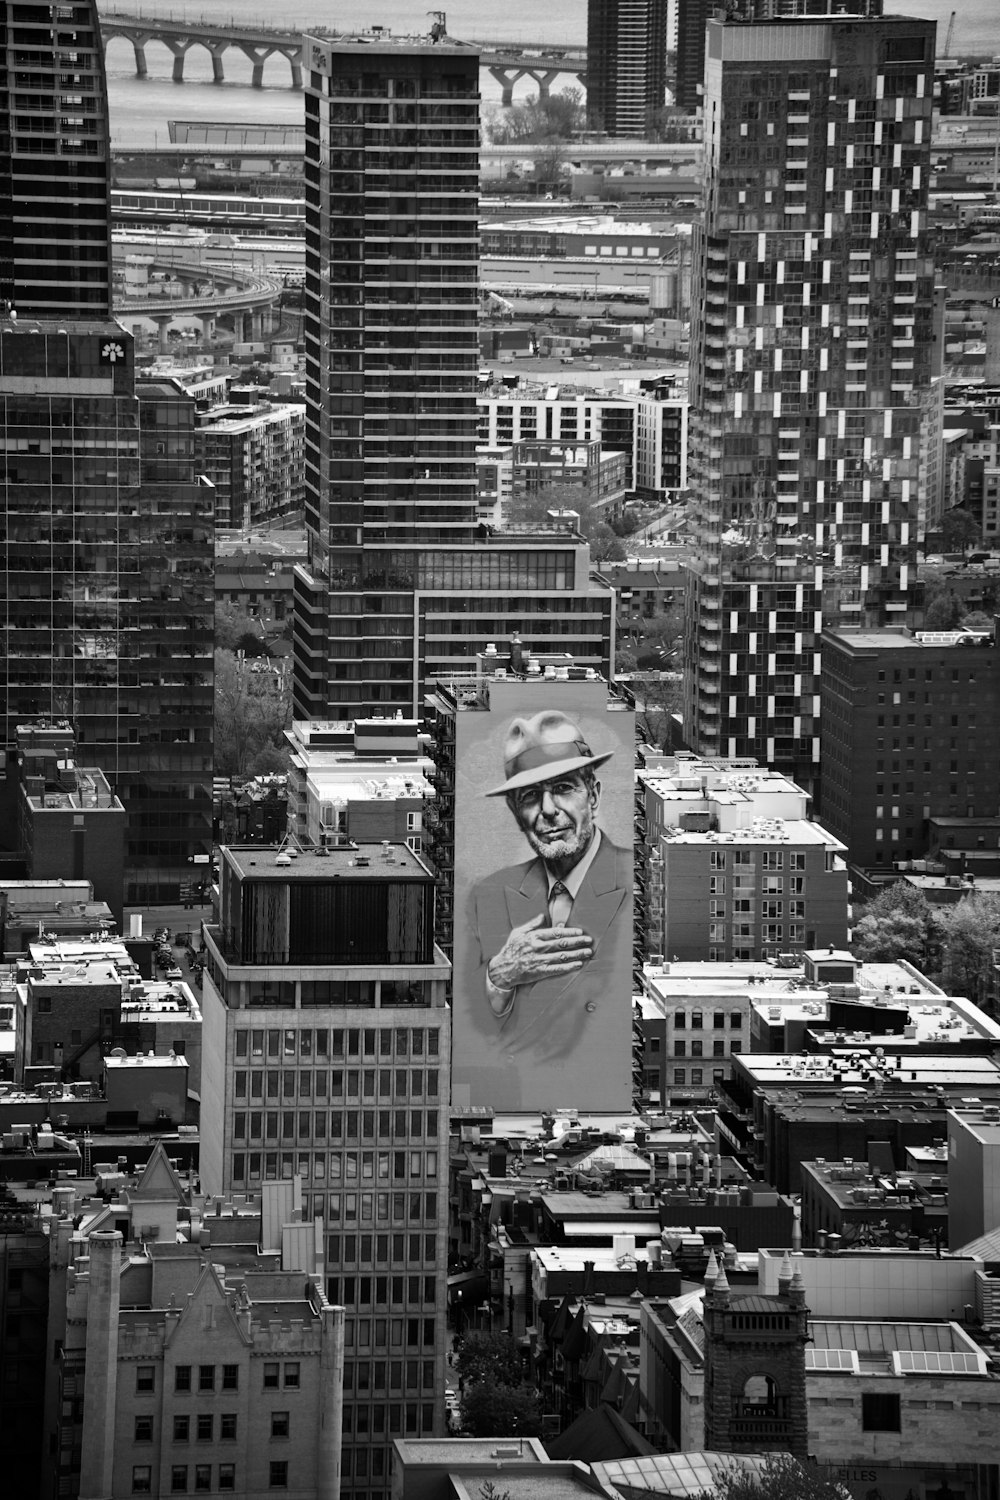 Una foto en blanco y negro de una ciudad con edificios altos